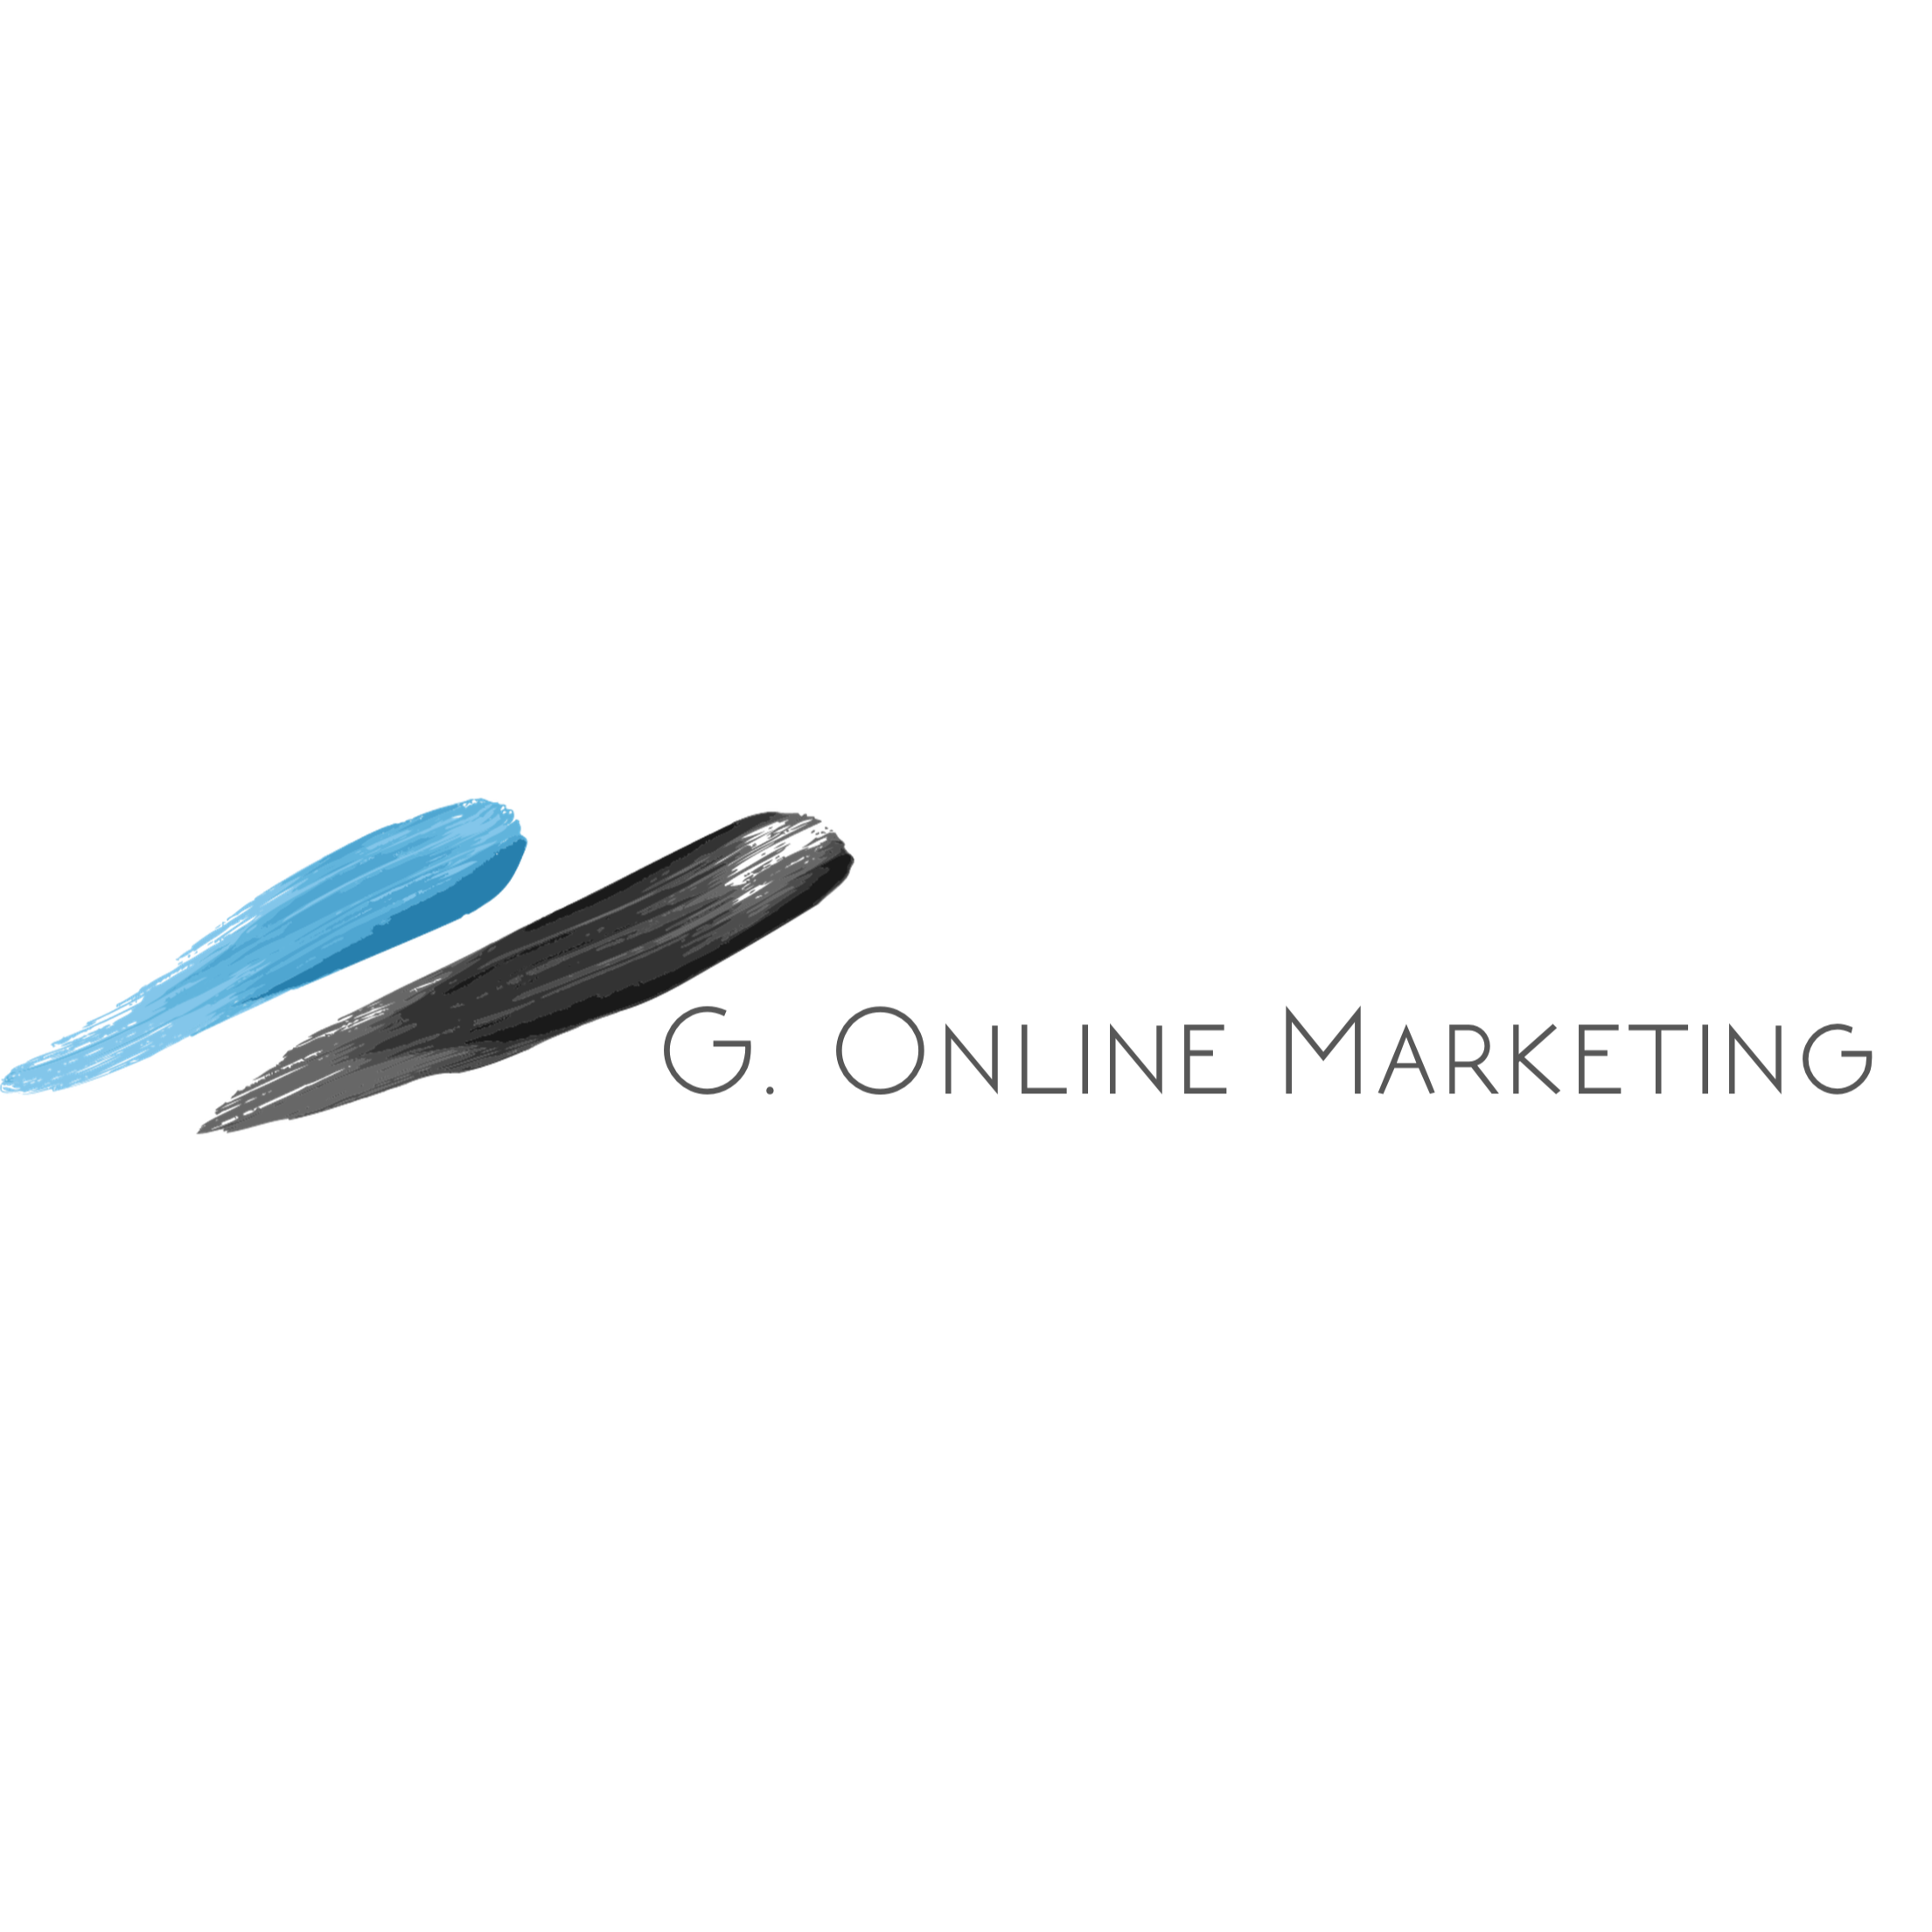 G. Online Marketing in Berlin - Logo